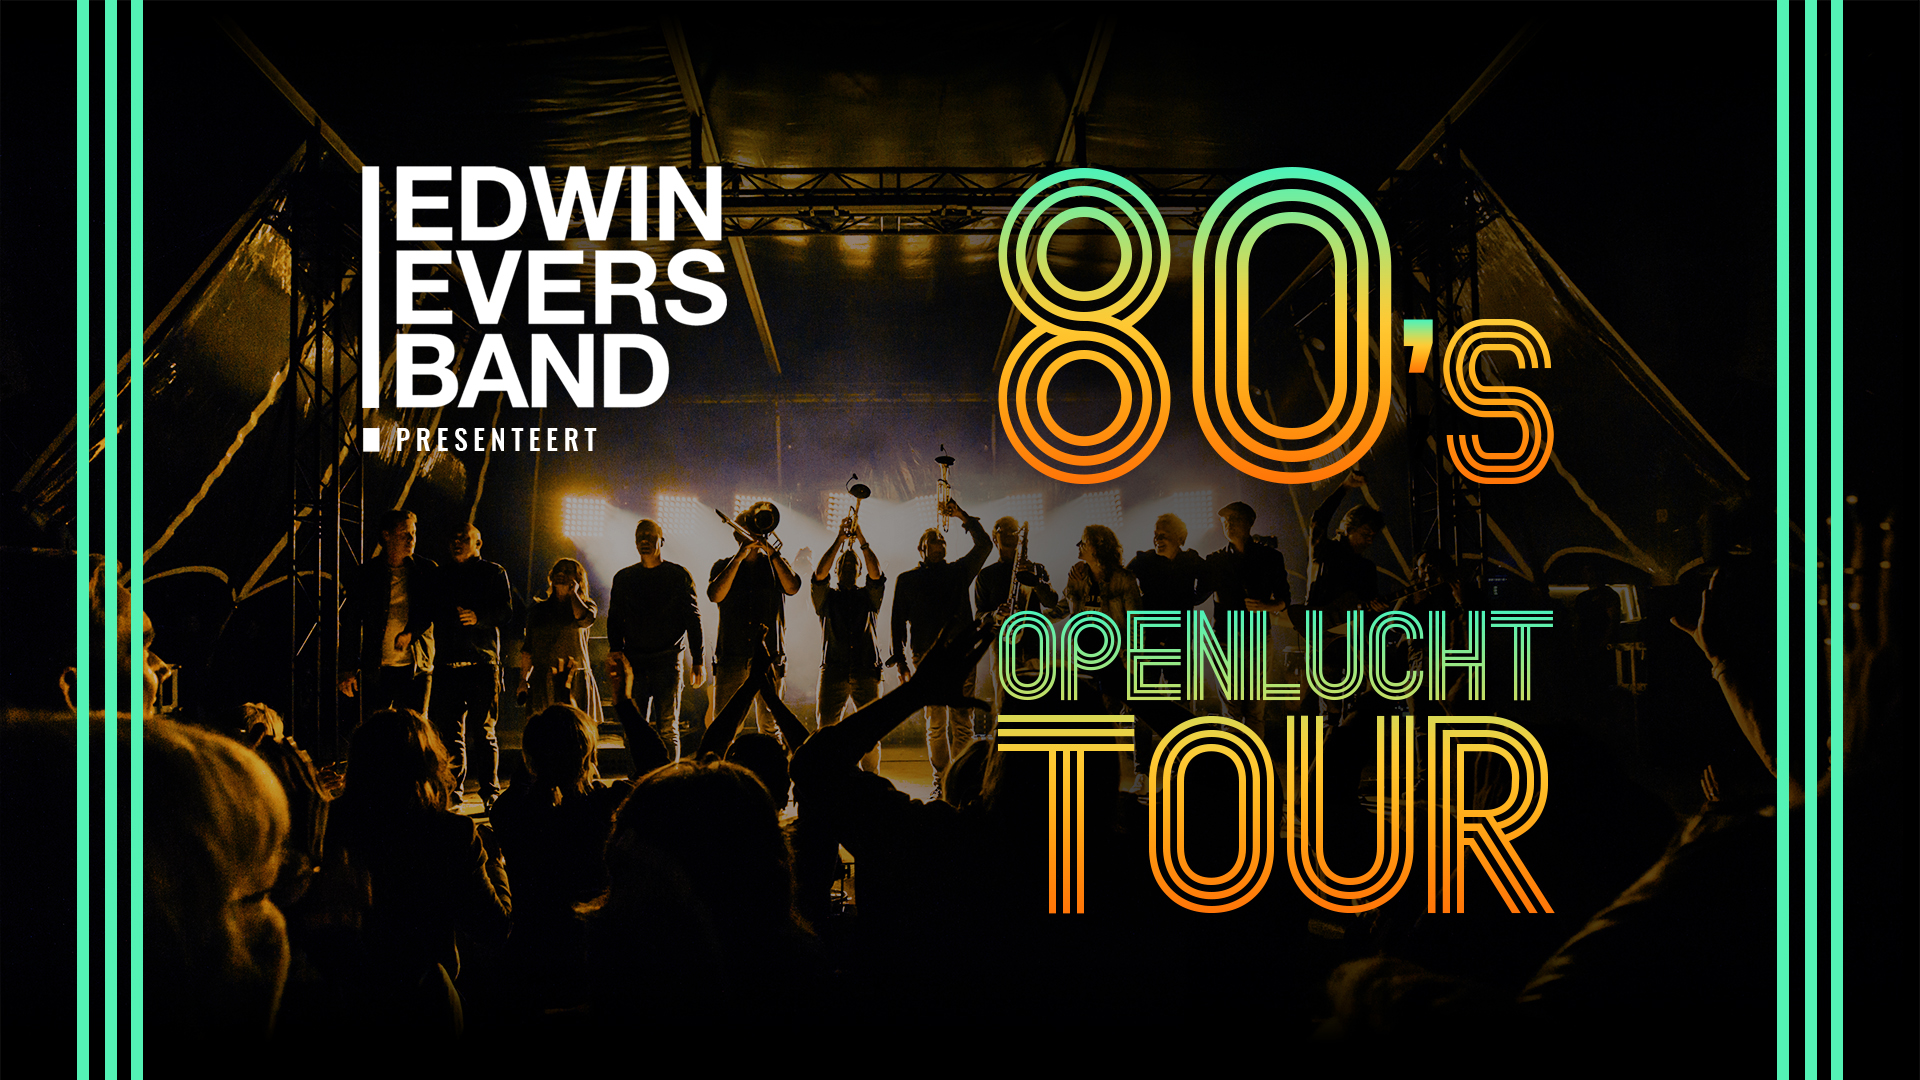 Edwin Evers Band Presenteert: 80’s Openlucht Tour